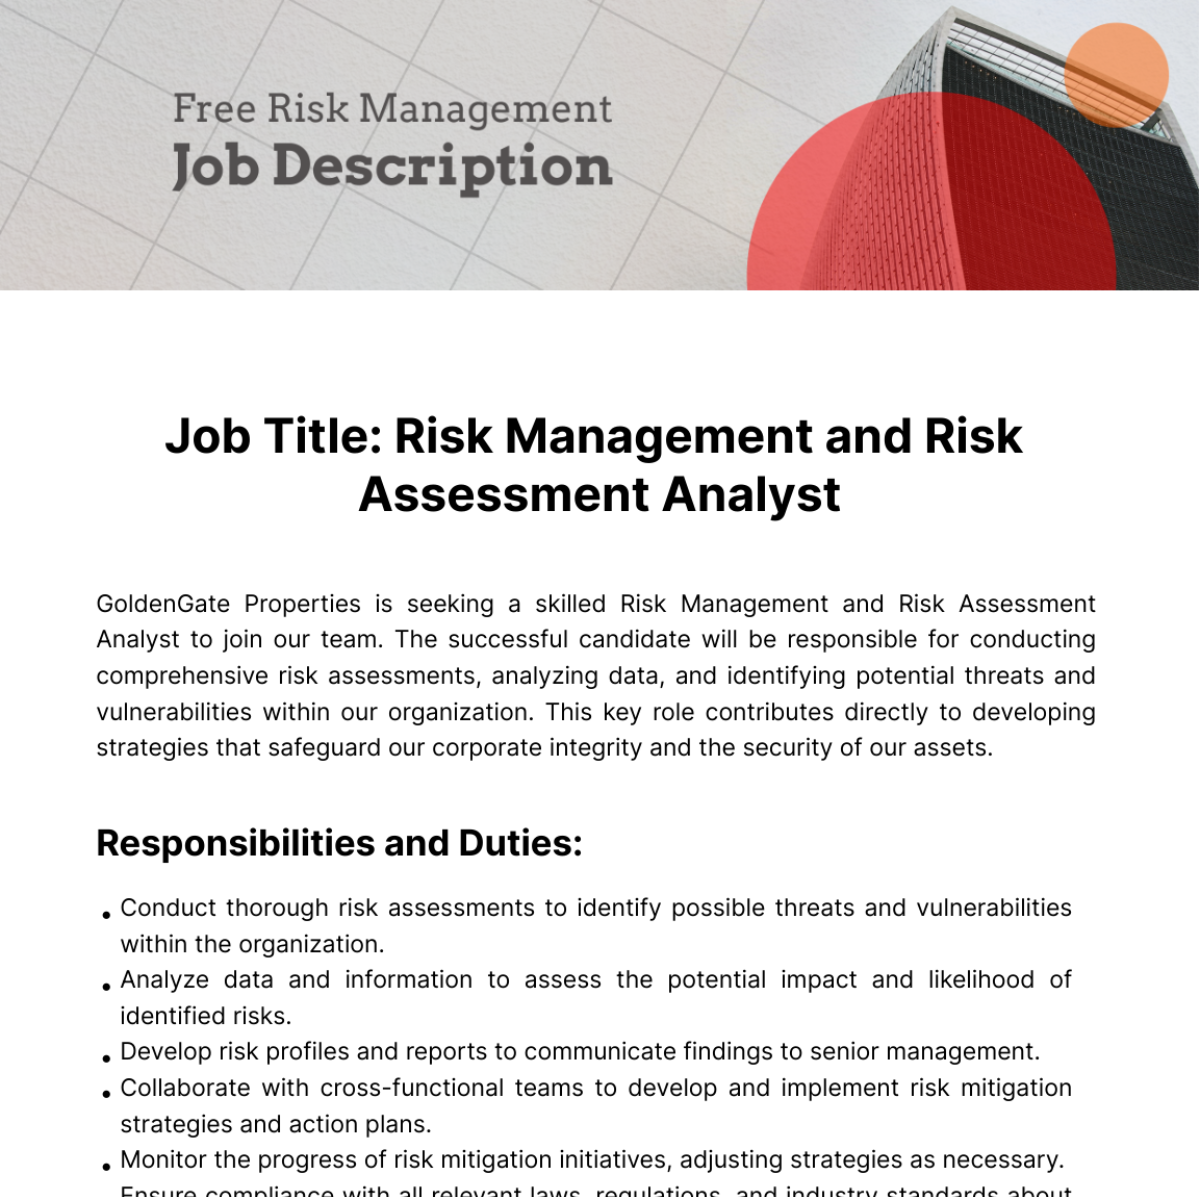 Free Risk Management Job Description Template